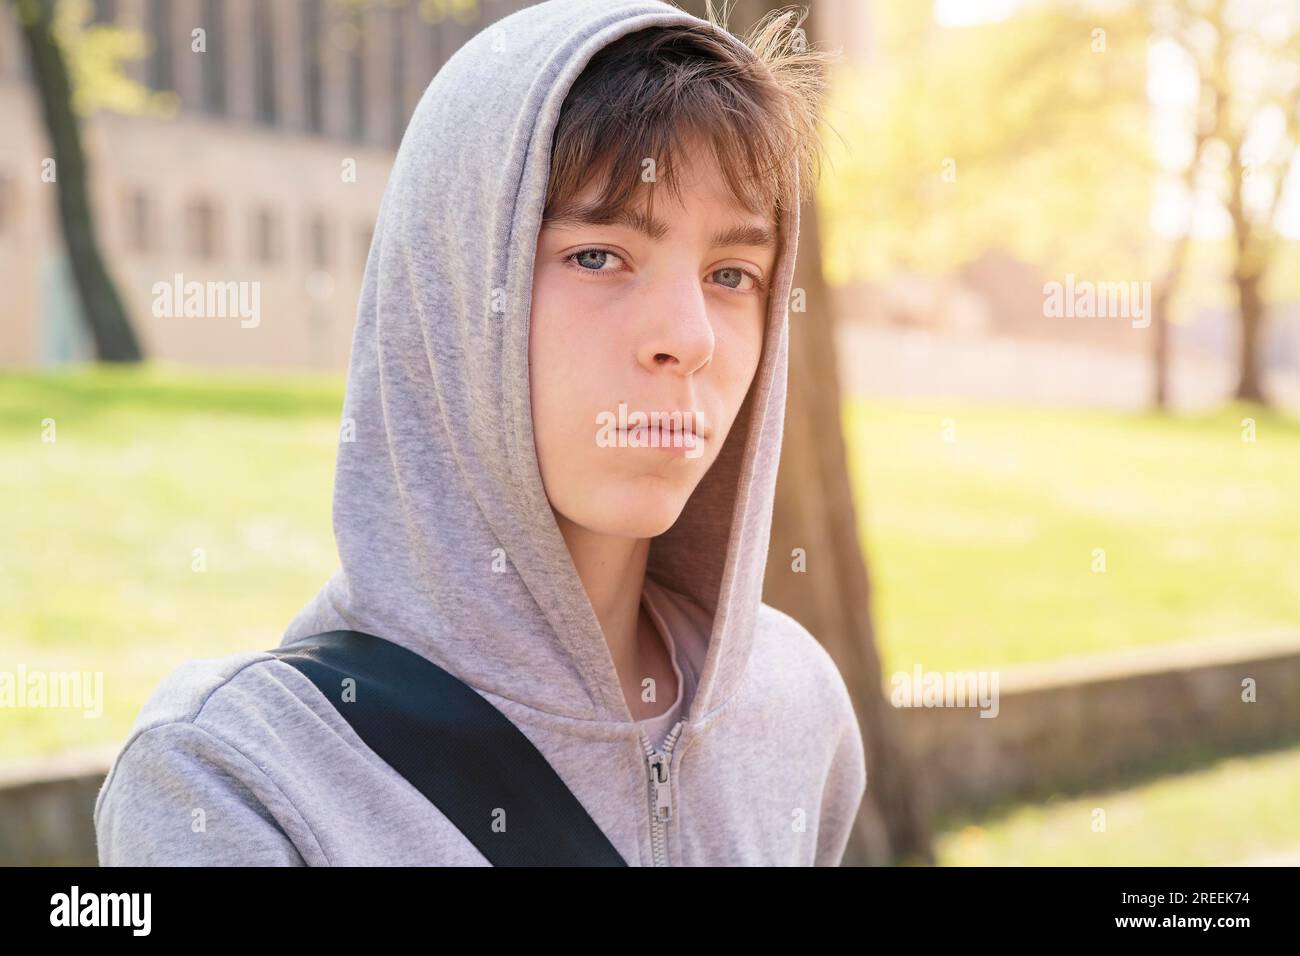 Bellissimo ragazzo adolescente con felpa con cappuccio Foto Stock